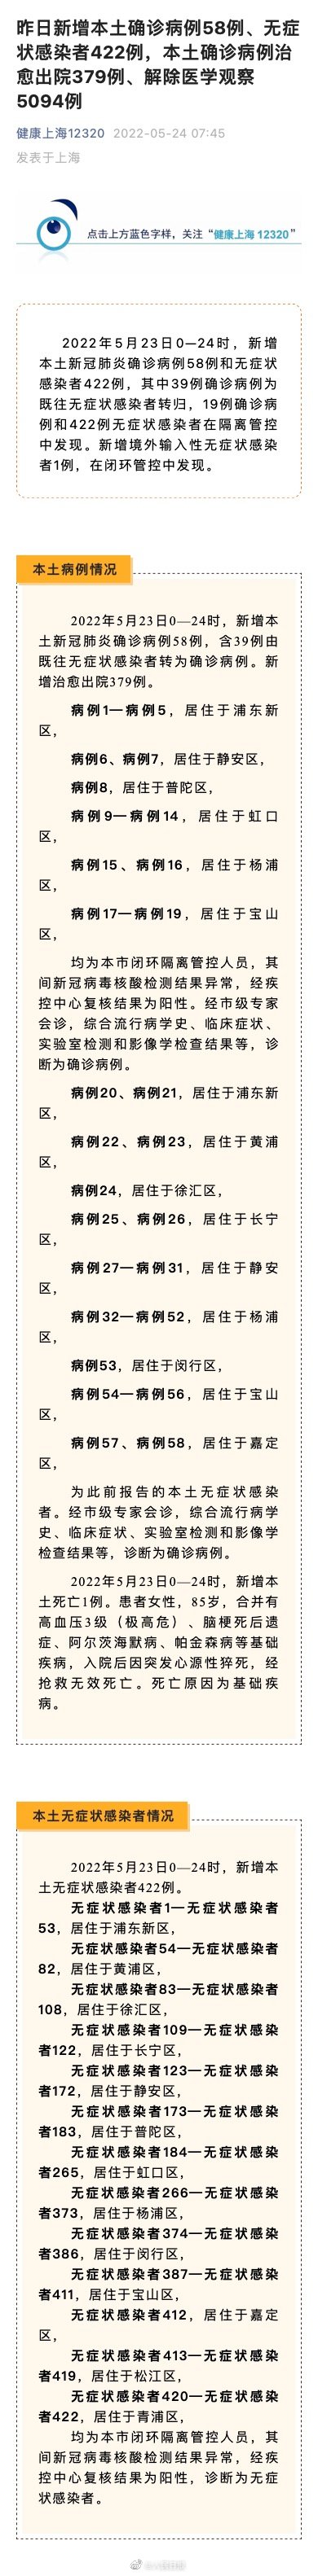 上海新增本土确诊58例、无症状感染者422例